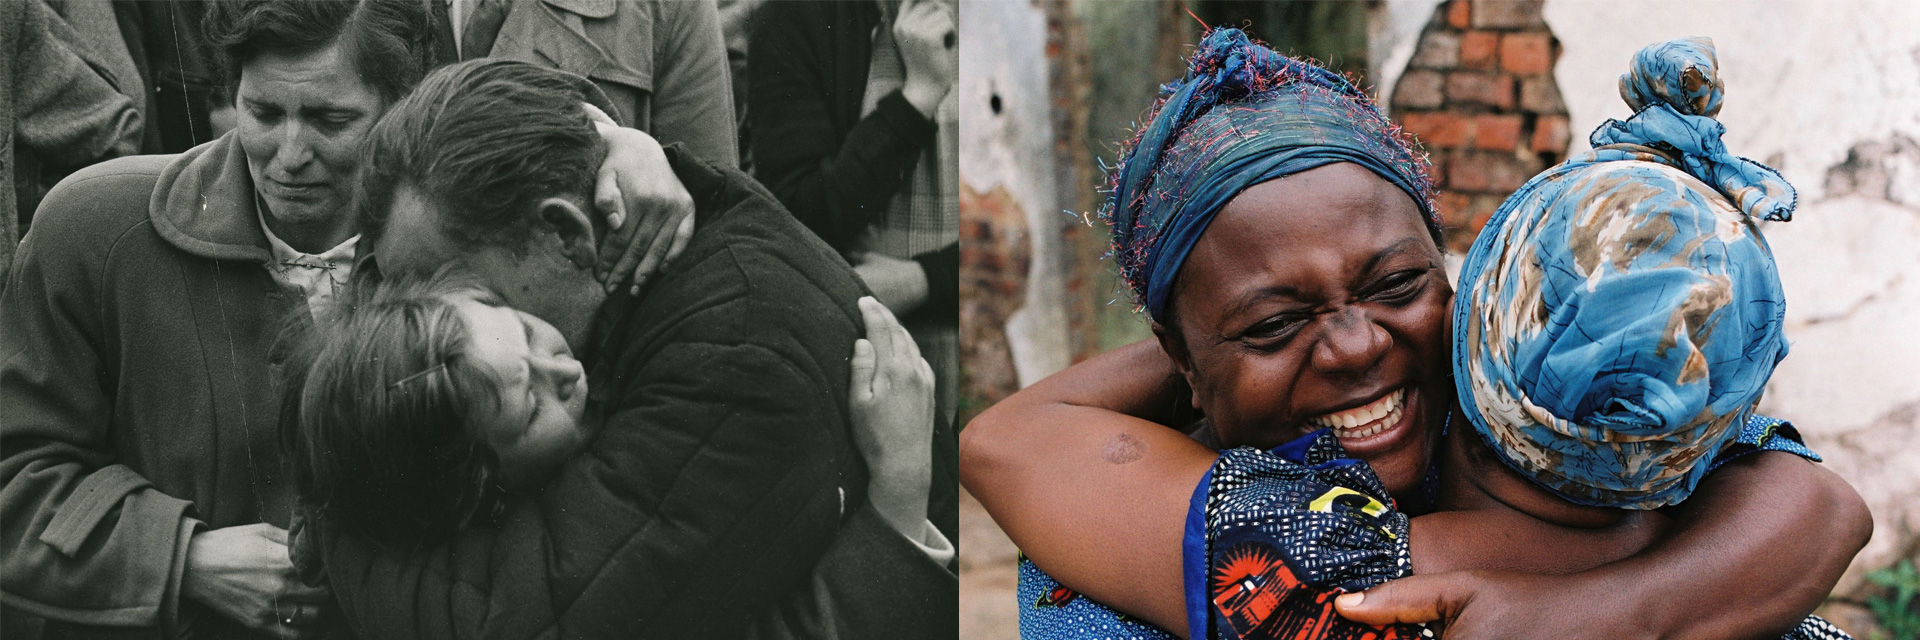 Zwei Fotos nebeneinander. Links zeigt ein Schwarz-Weiß-Foto ein junges Mädchen, das seinen Vater umarmt. Das Foto rechts zeigt zwei schwarze Frauen, die sich umarmen.